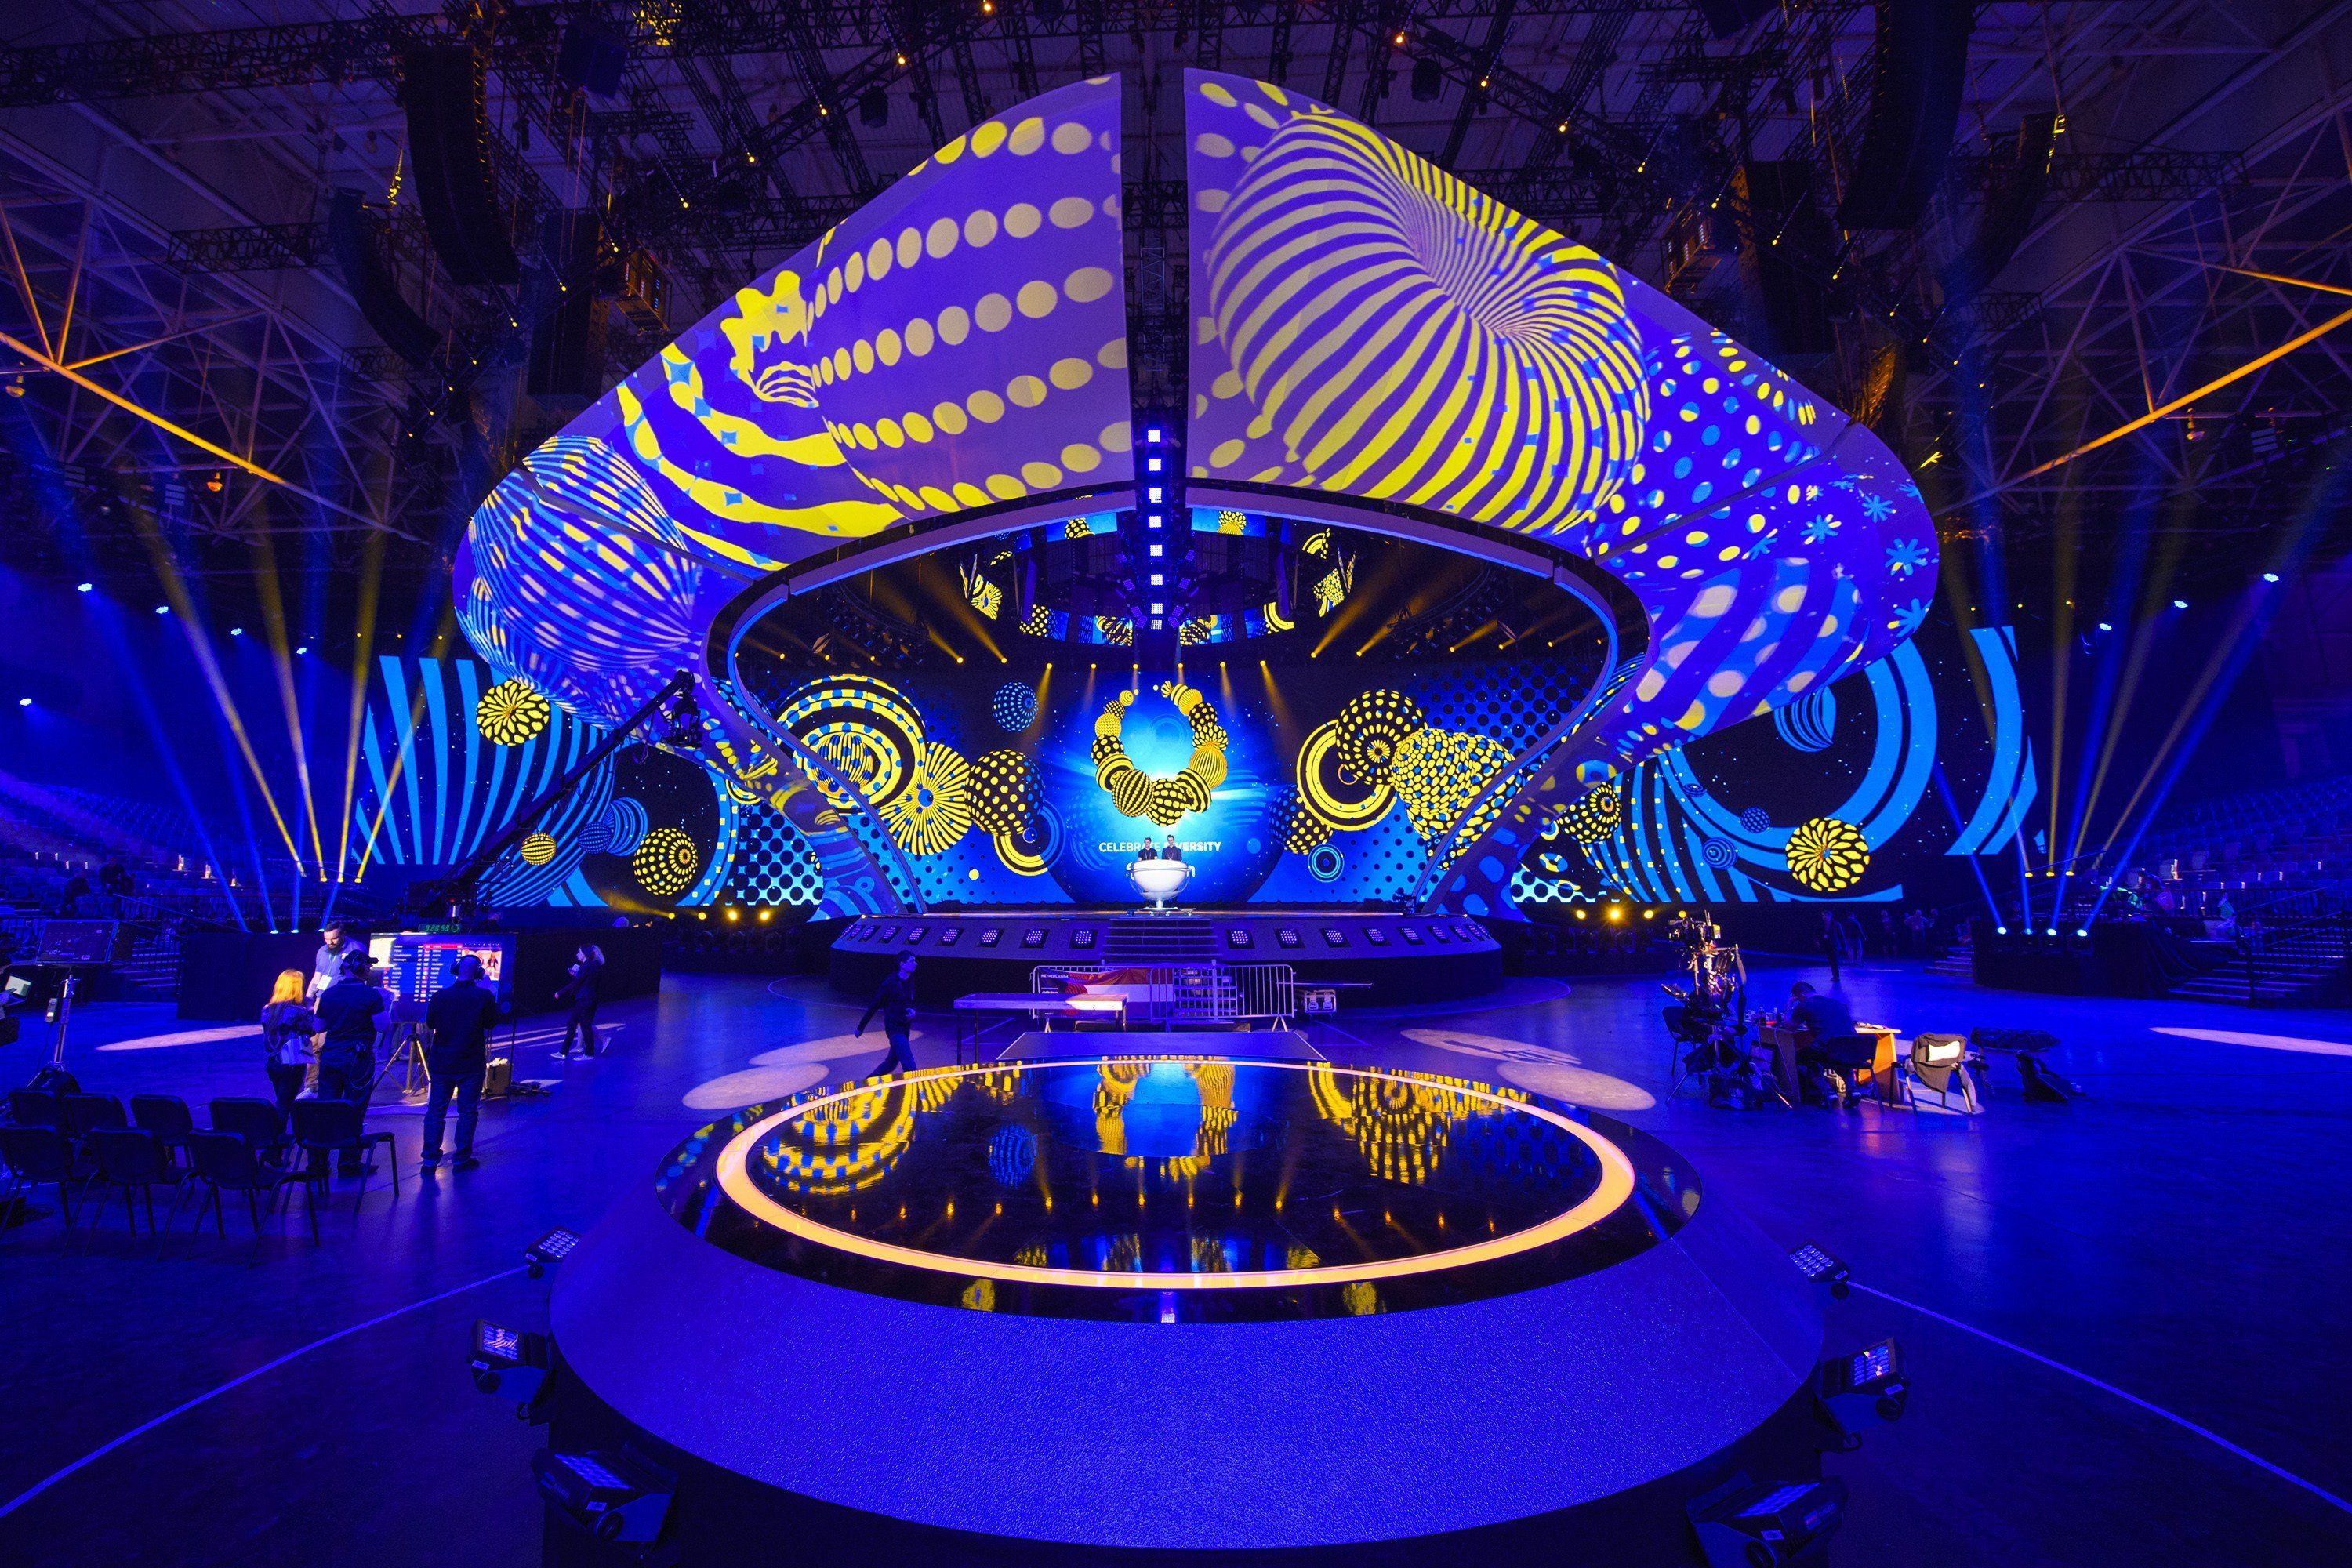 Escena del Festival de la Canción de Eurovisión, fondos de pantalla de Kiev 2017 y